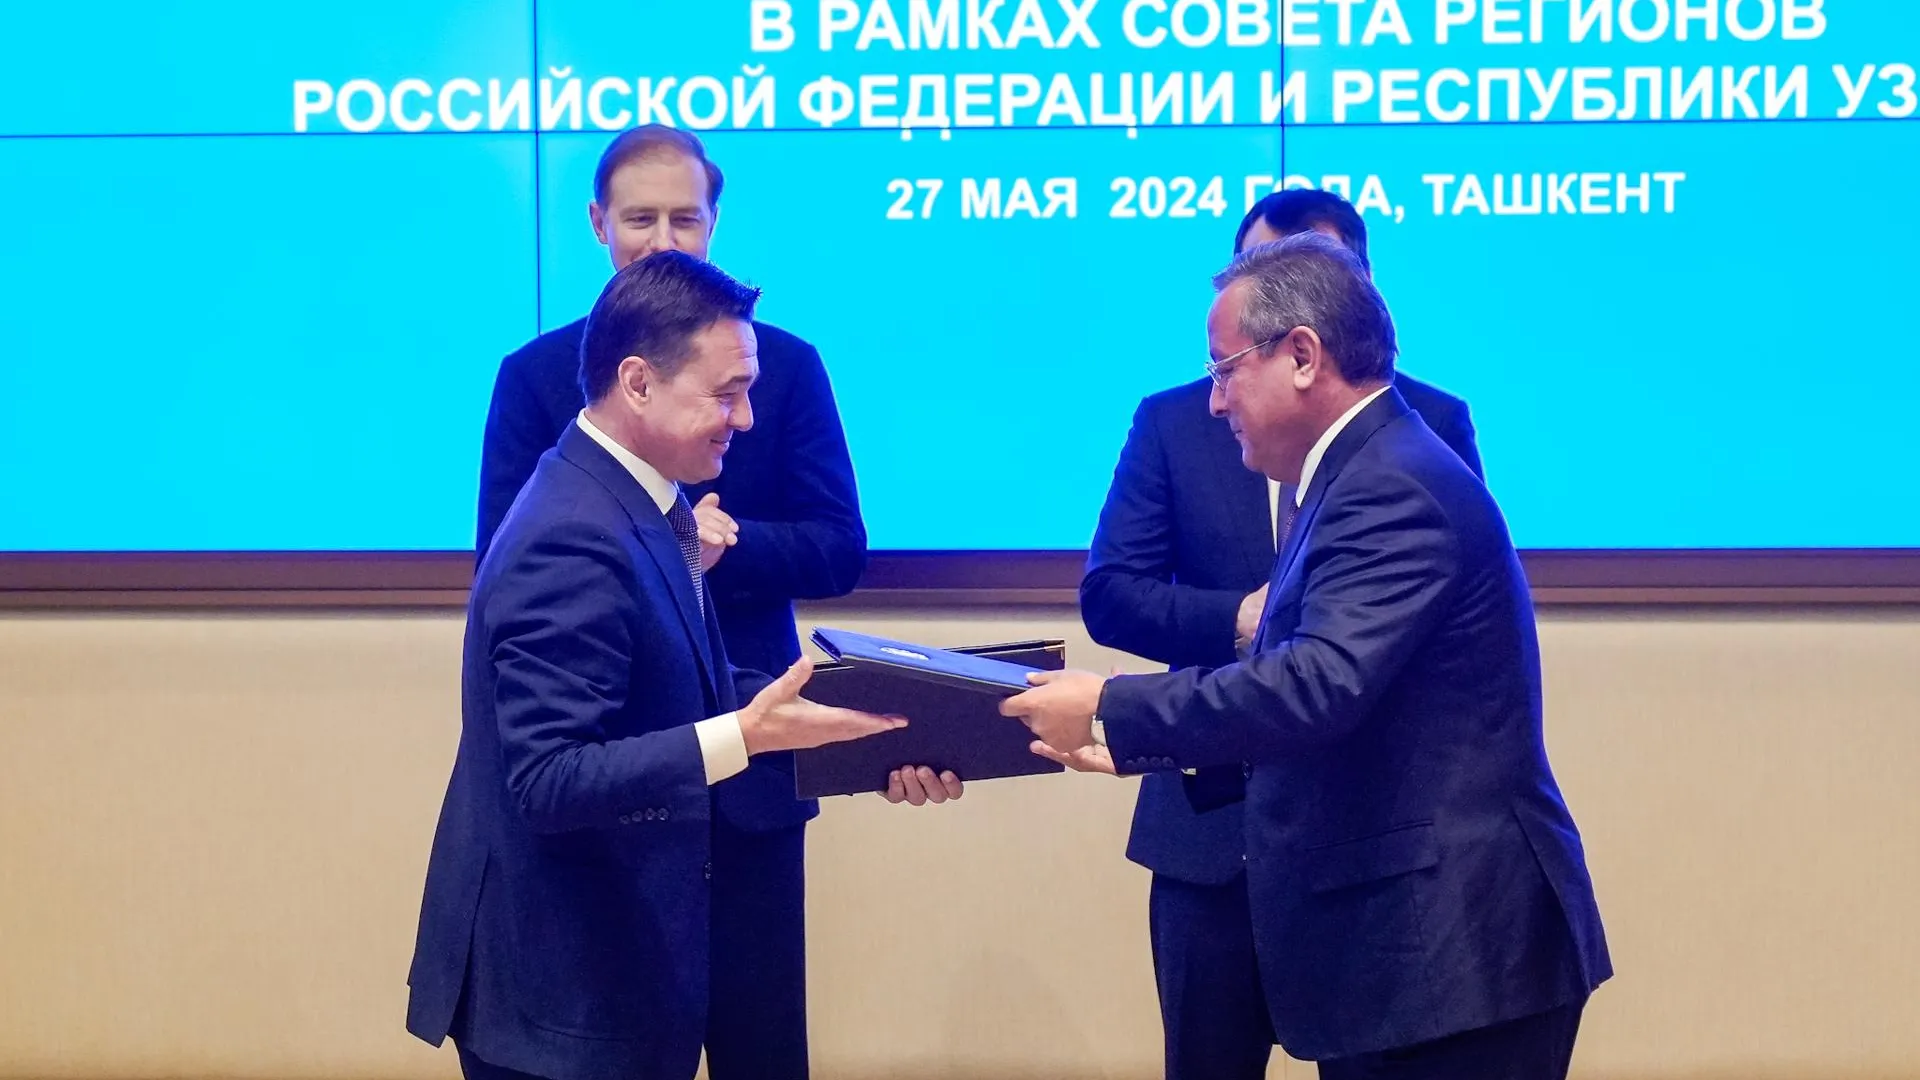 Подмосковье и Андижанская область Узбекистана подписали меморандум о сотрудничестве в инвестиционной сфере